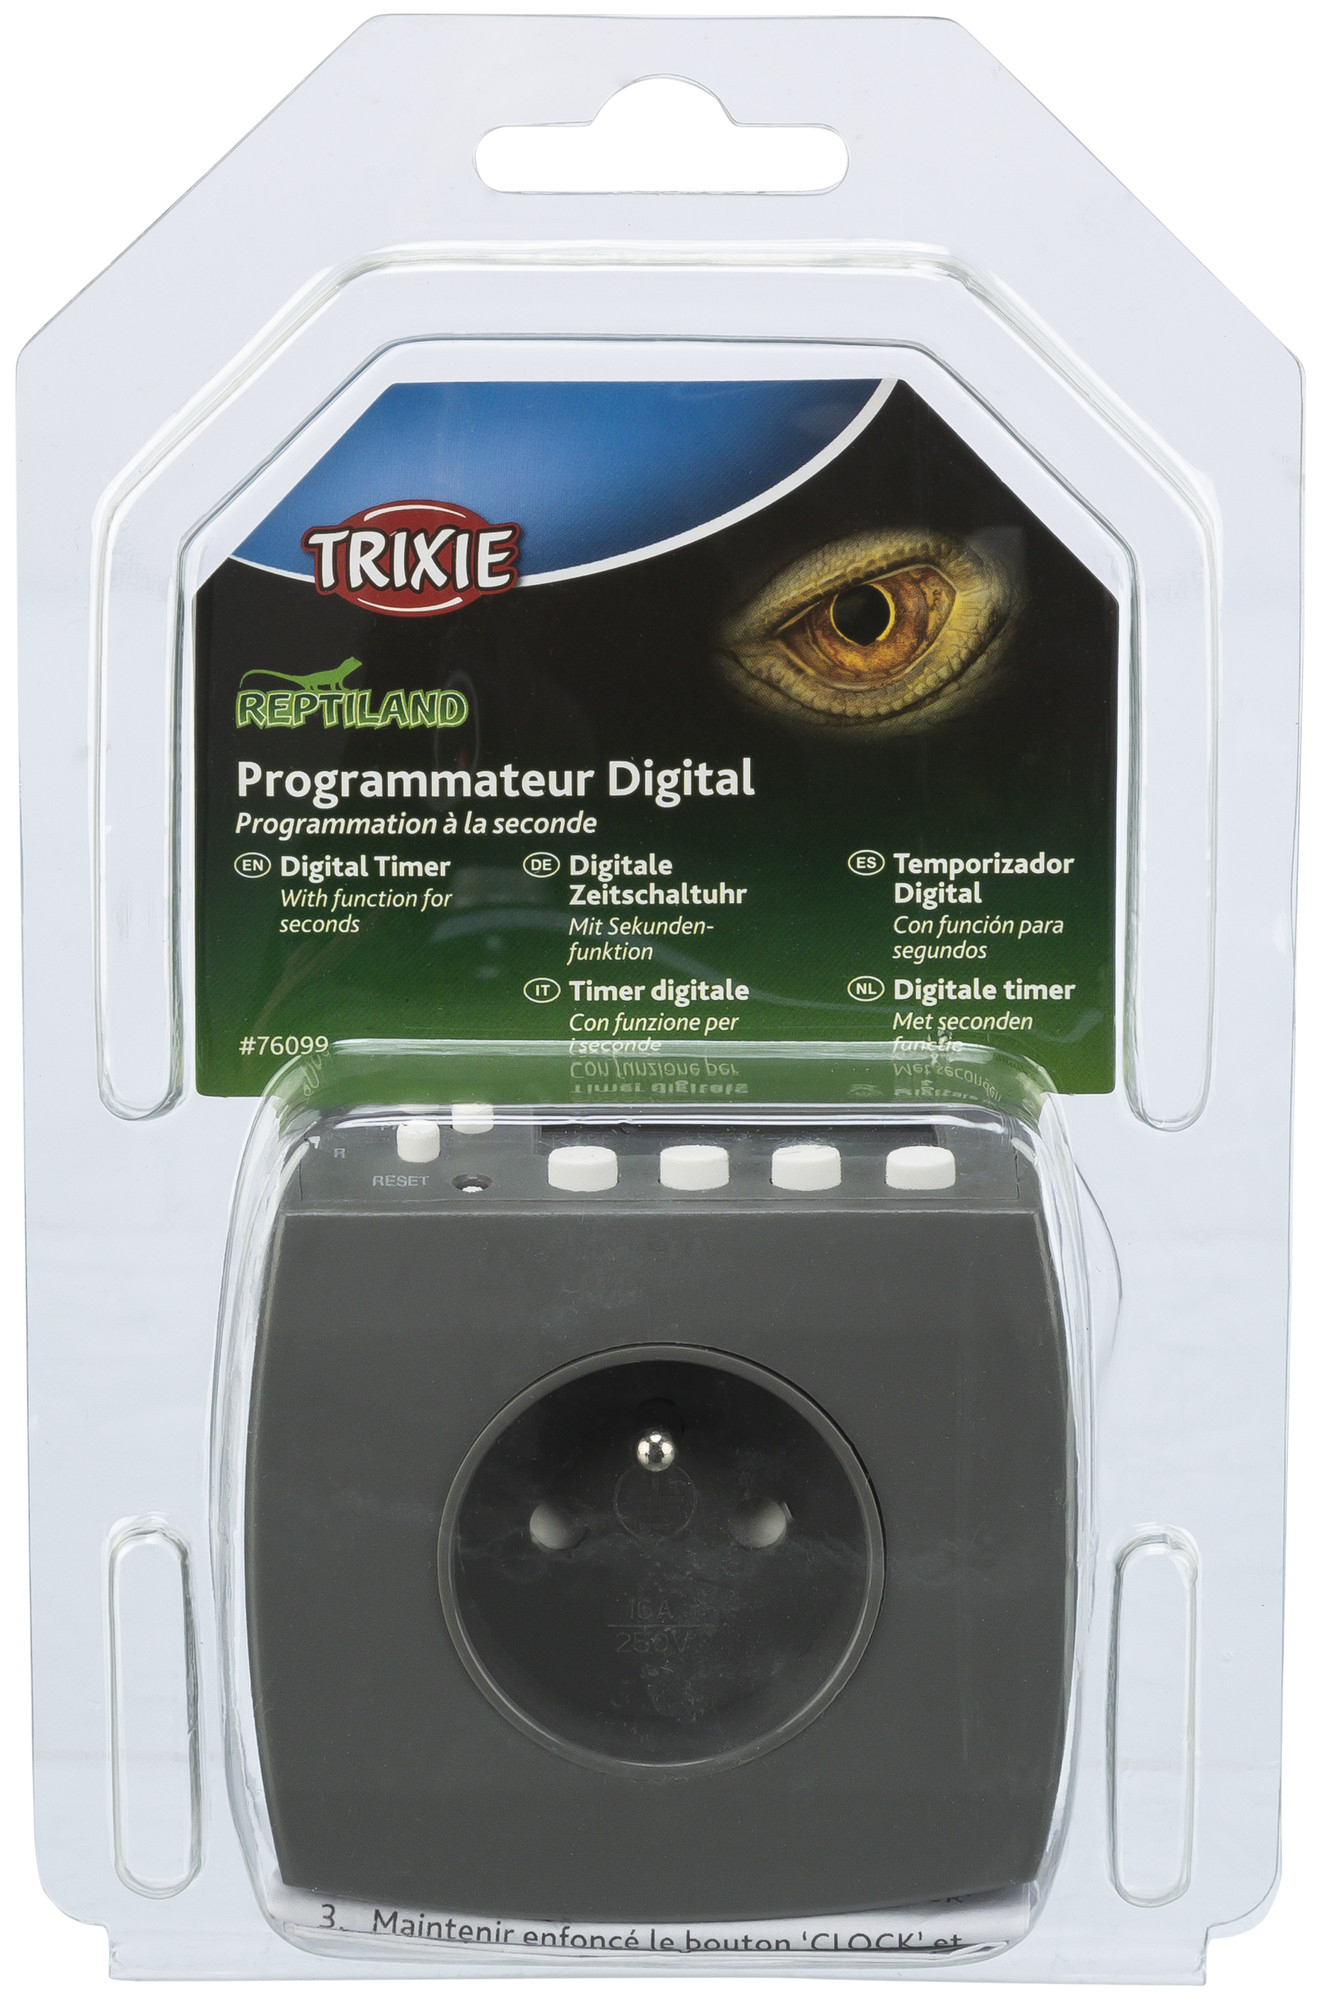 Programmateur digital Trixie Reptiland